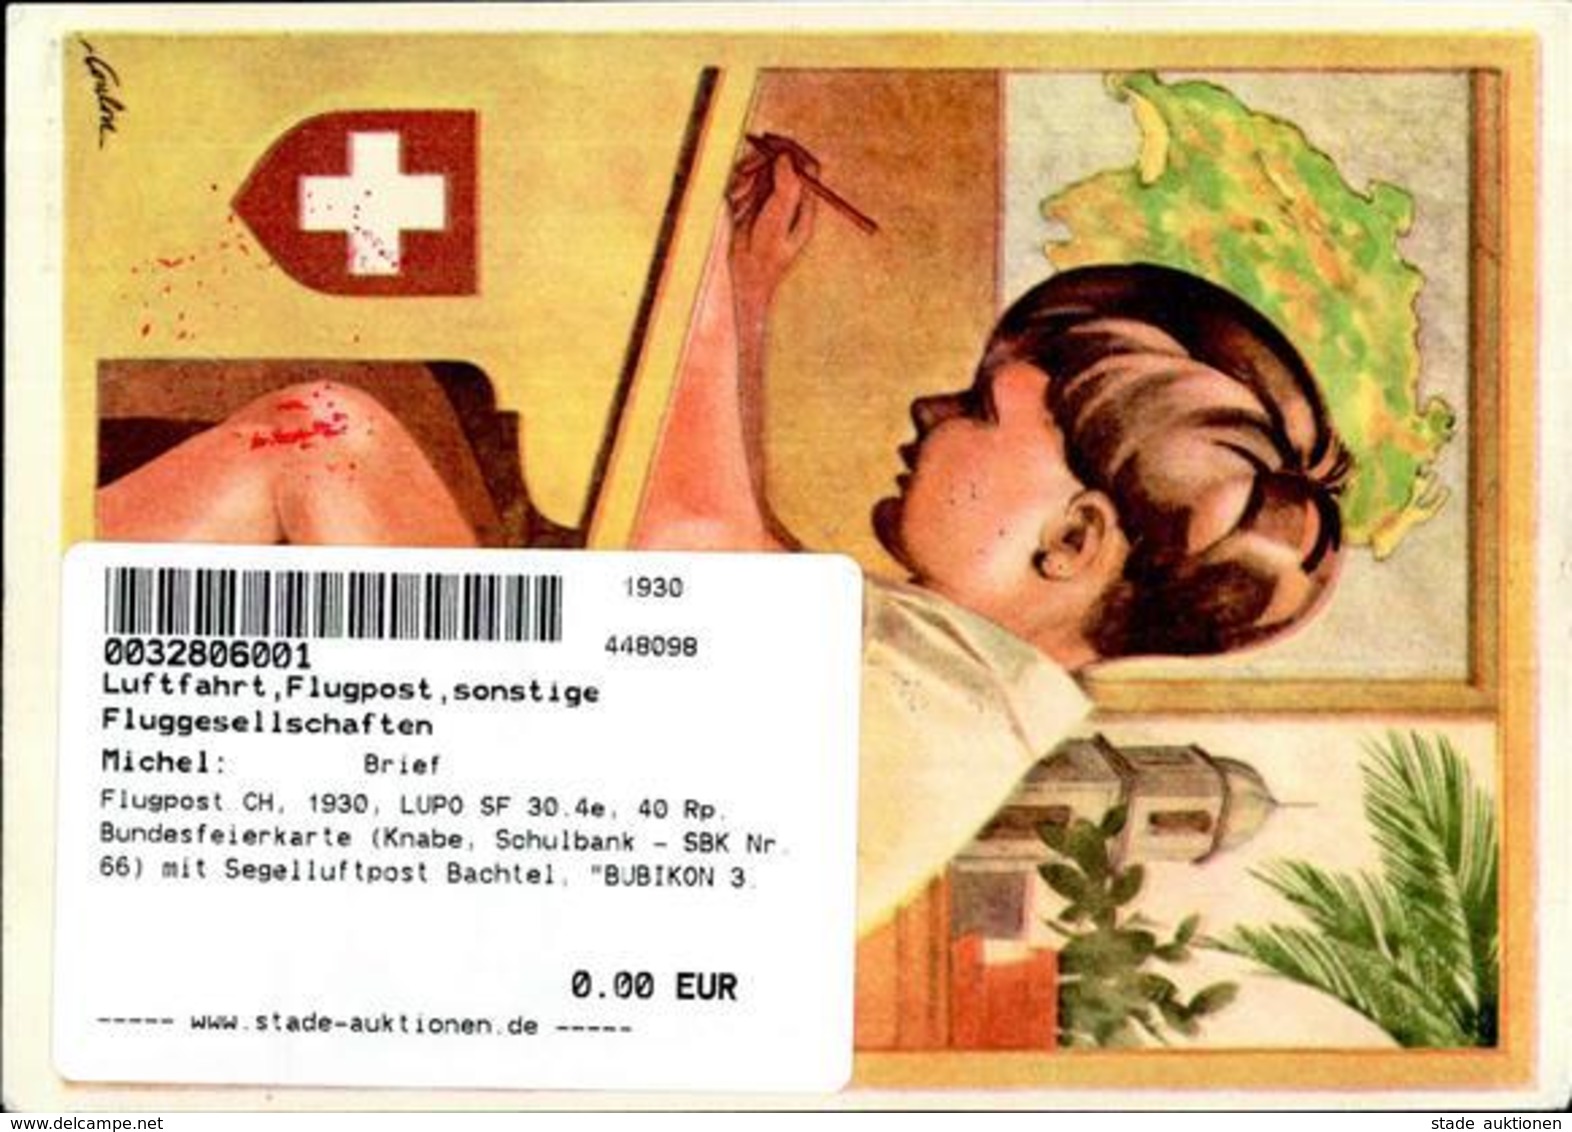 Flugpost CH, 1930, LUPO SF 30.4e, 40 Rp. Bundesfeierkarte (Knabe, Schulbank - SBK Nr.66) Mit Segelluftpost Bachtel, BUBI - Flieger